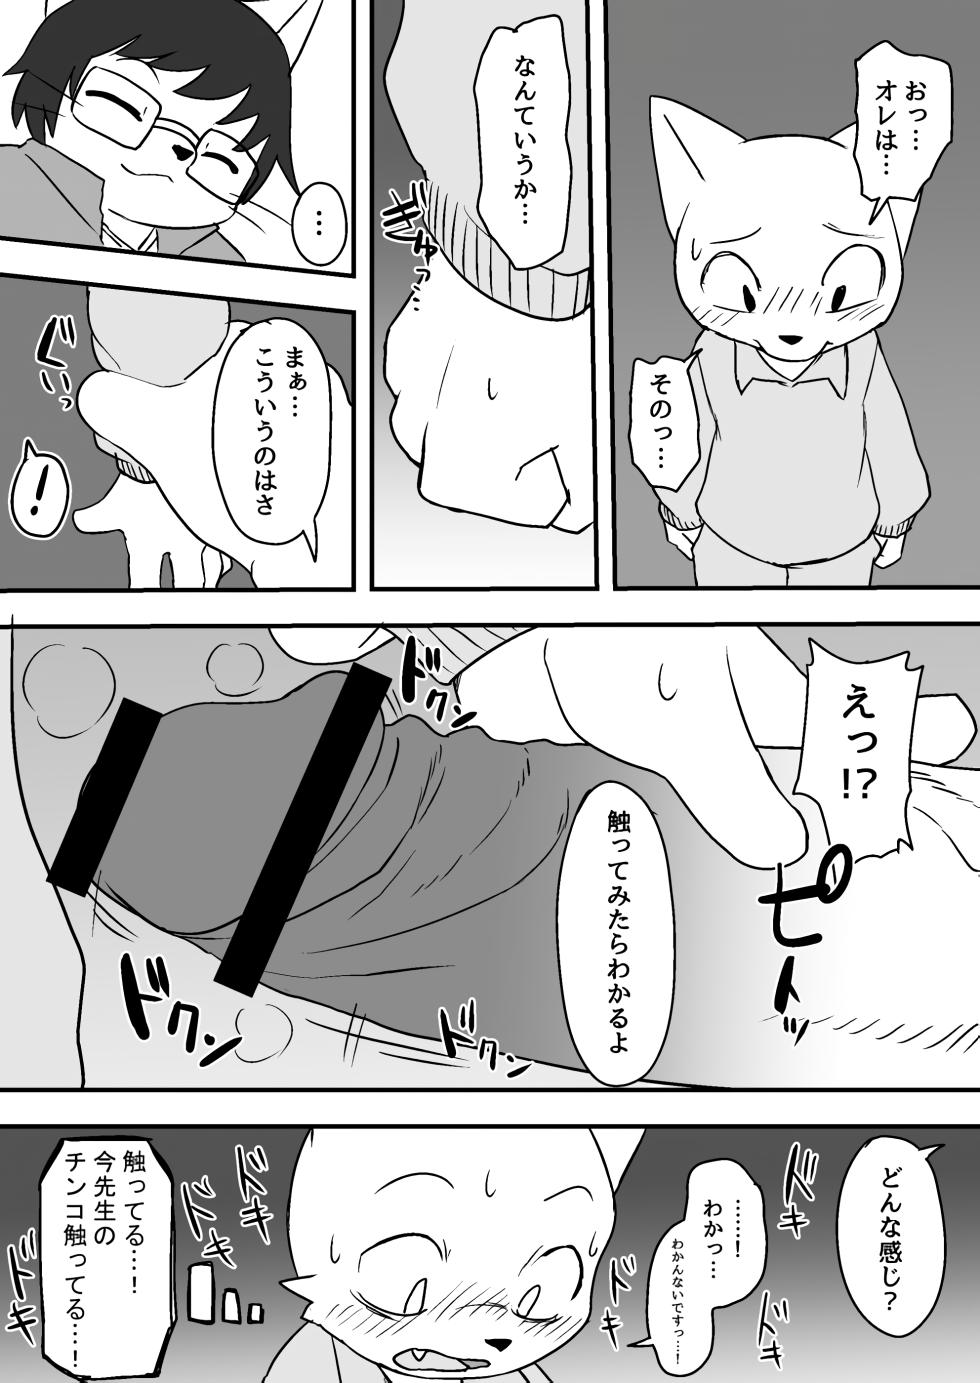 Manmosu Marimo - Sensei Story #1 (Raw) - Page 4